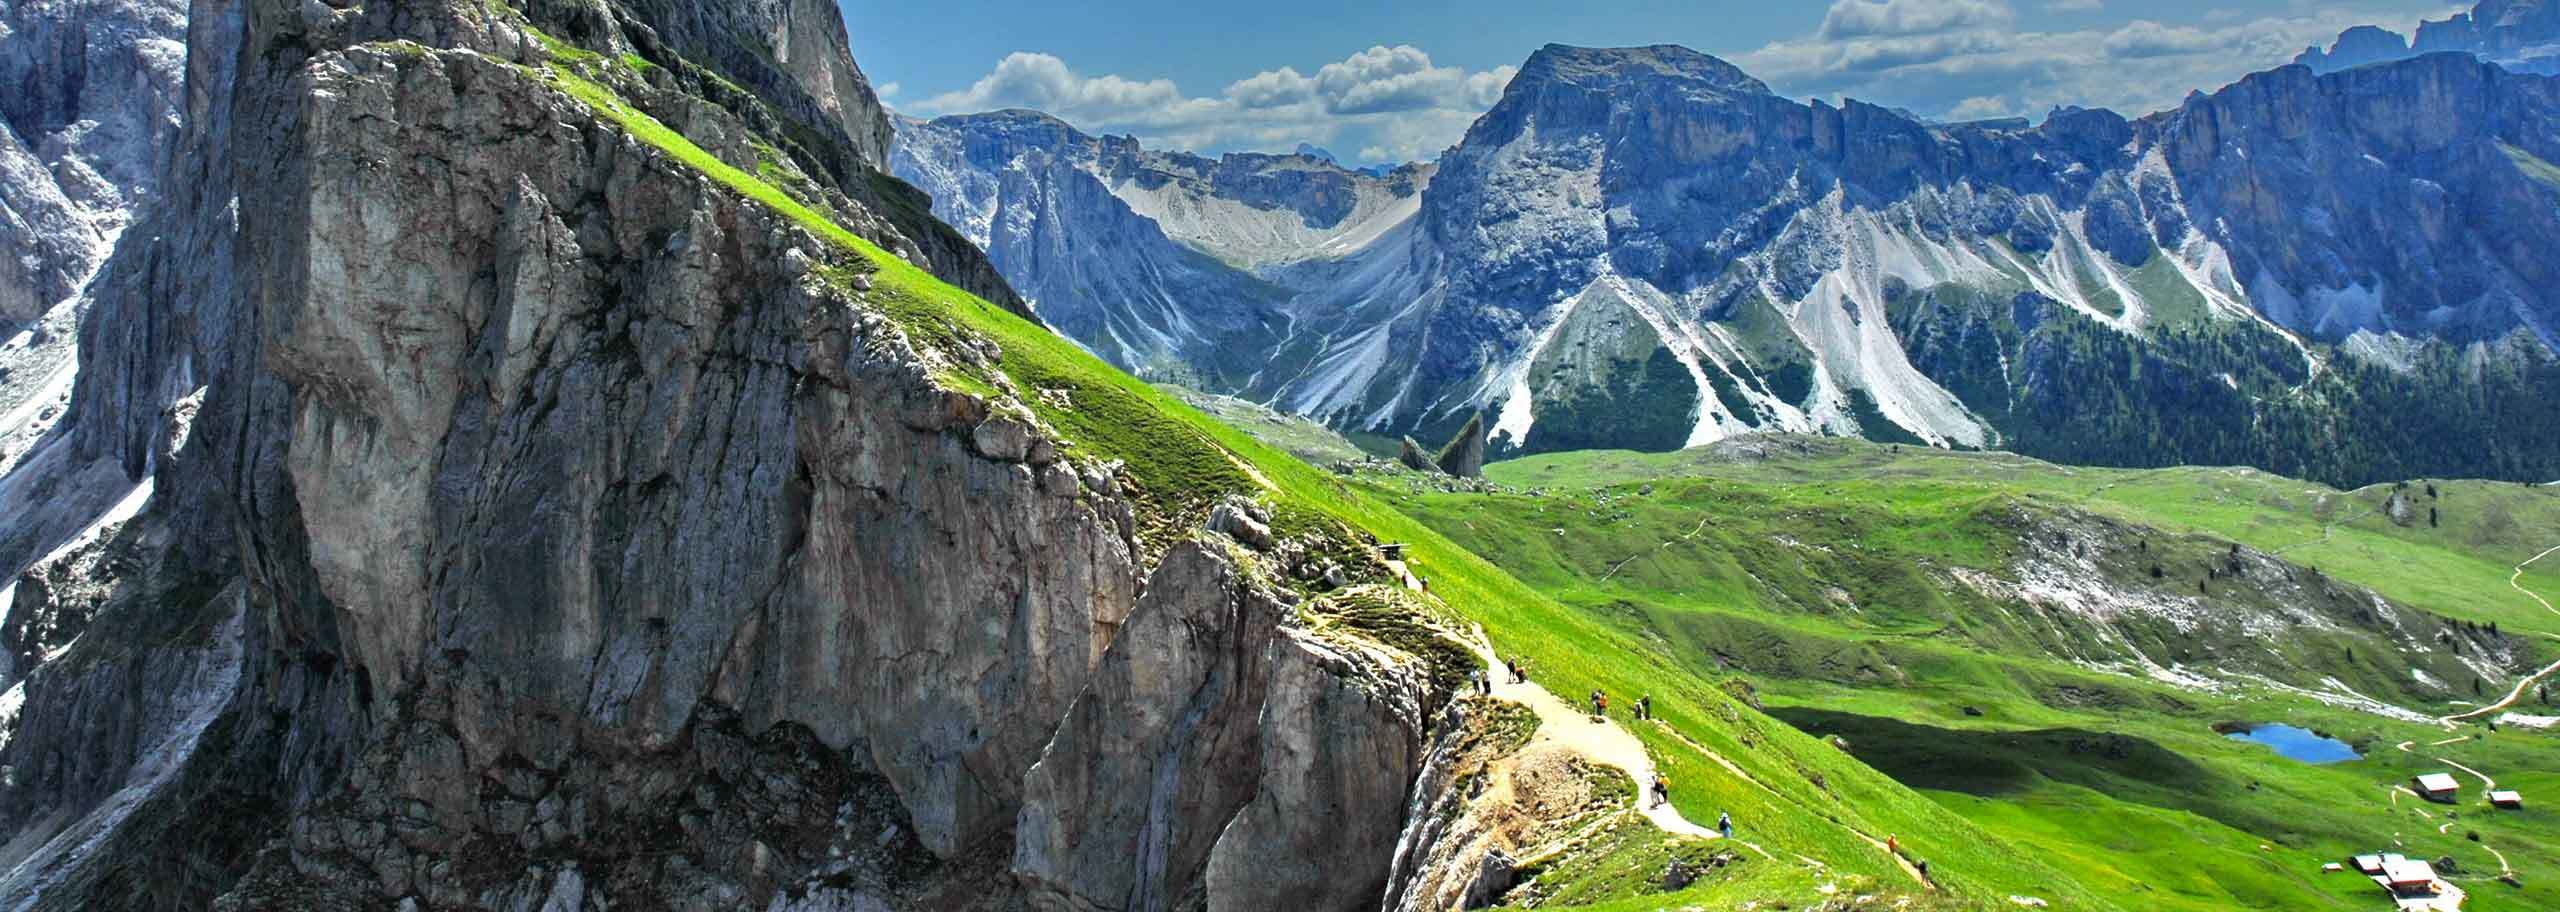 Escursioni in Val Gardena, Trekking e Camminate con Guida Alpina